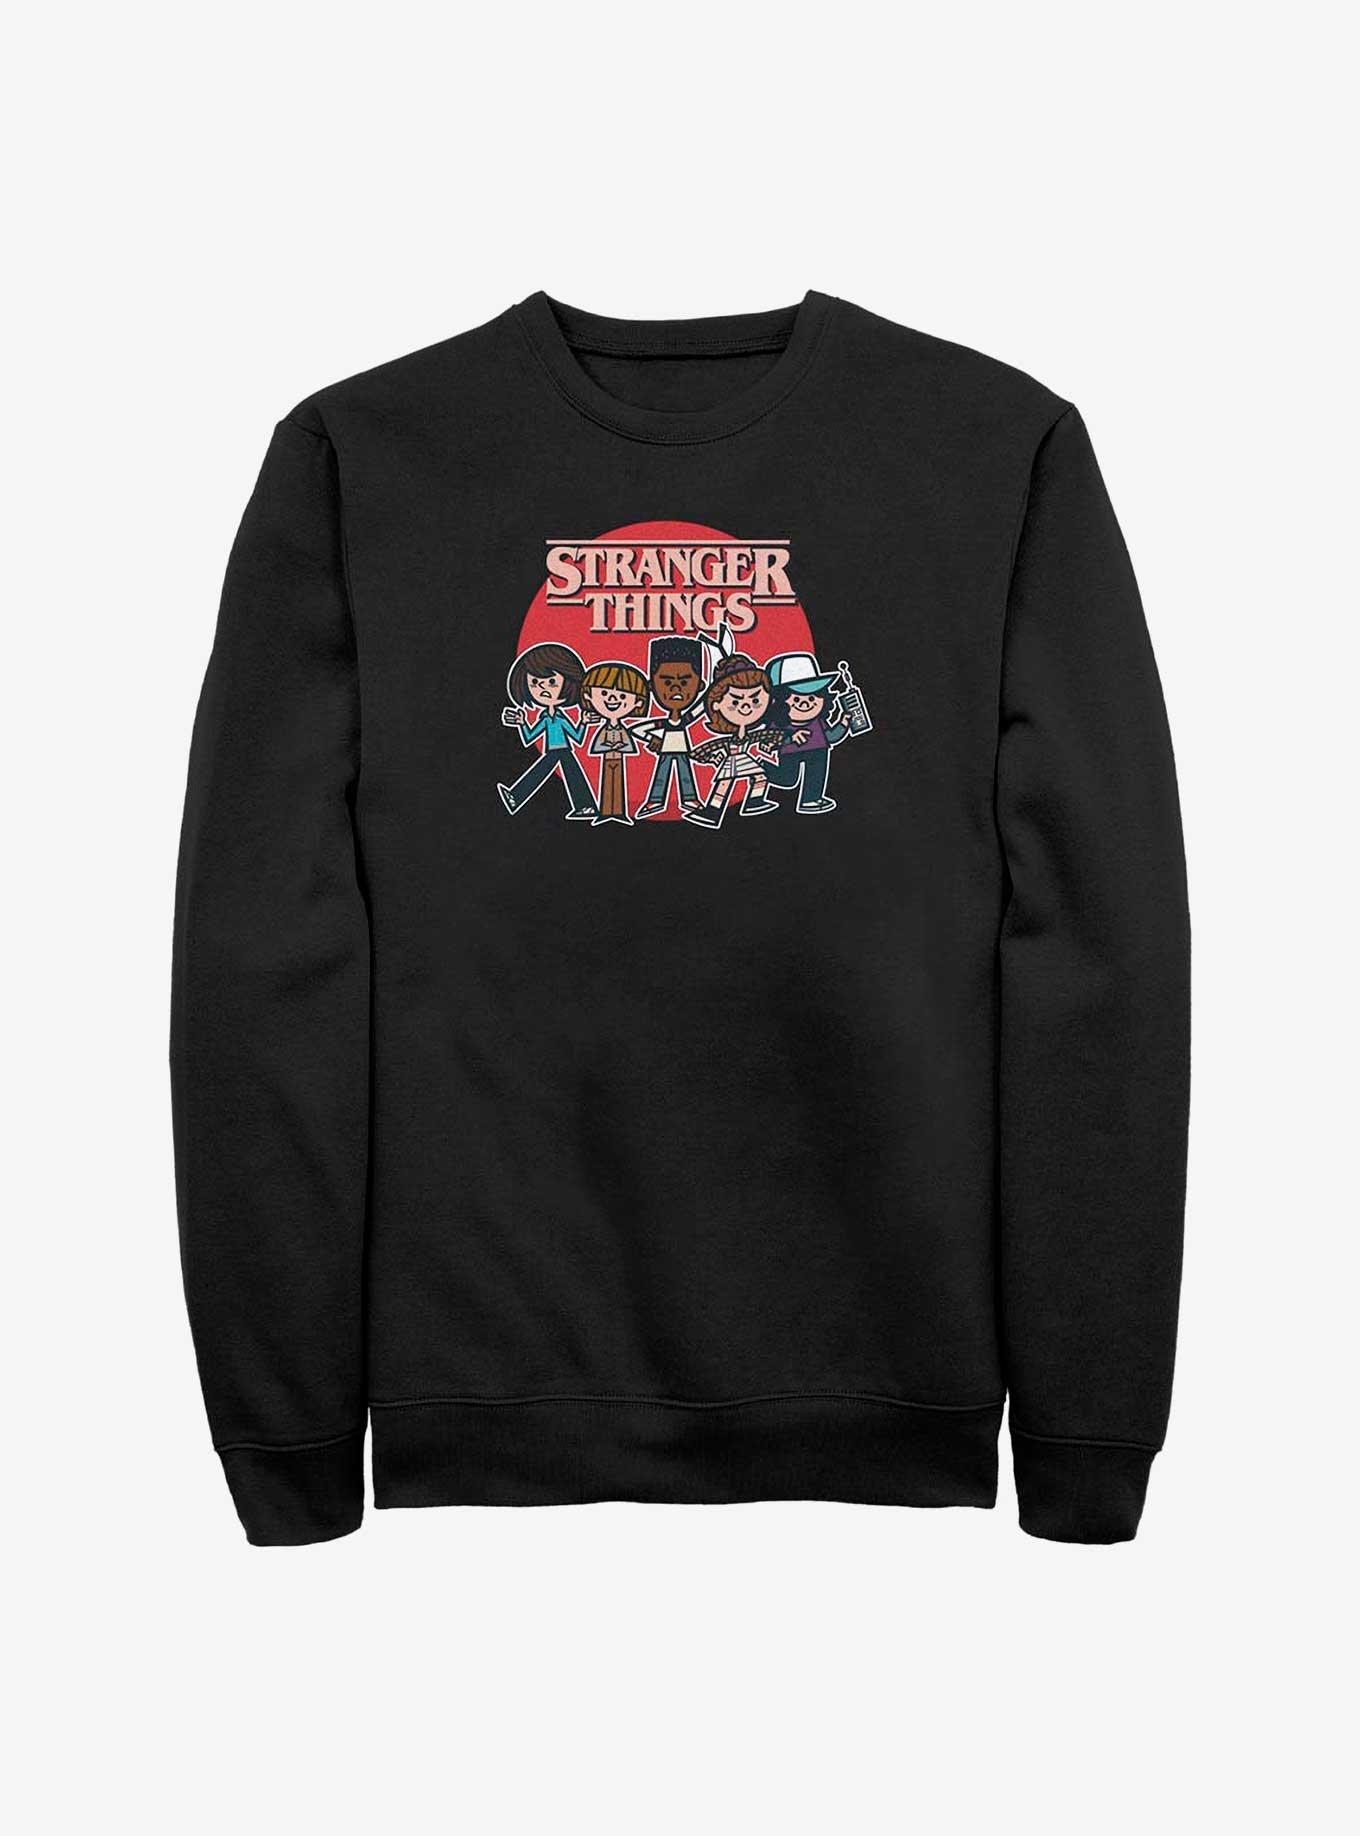 Stranger Things Toon Crew Sweatshirt, BLACK, hi-res